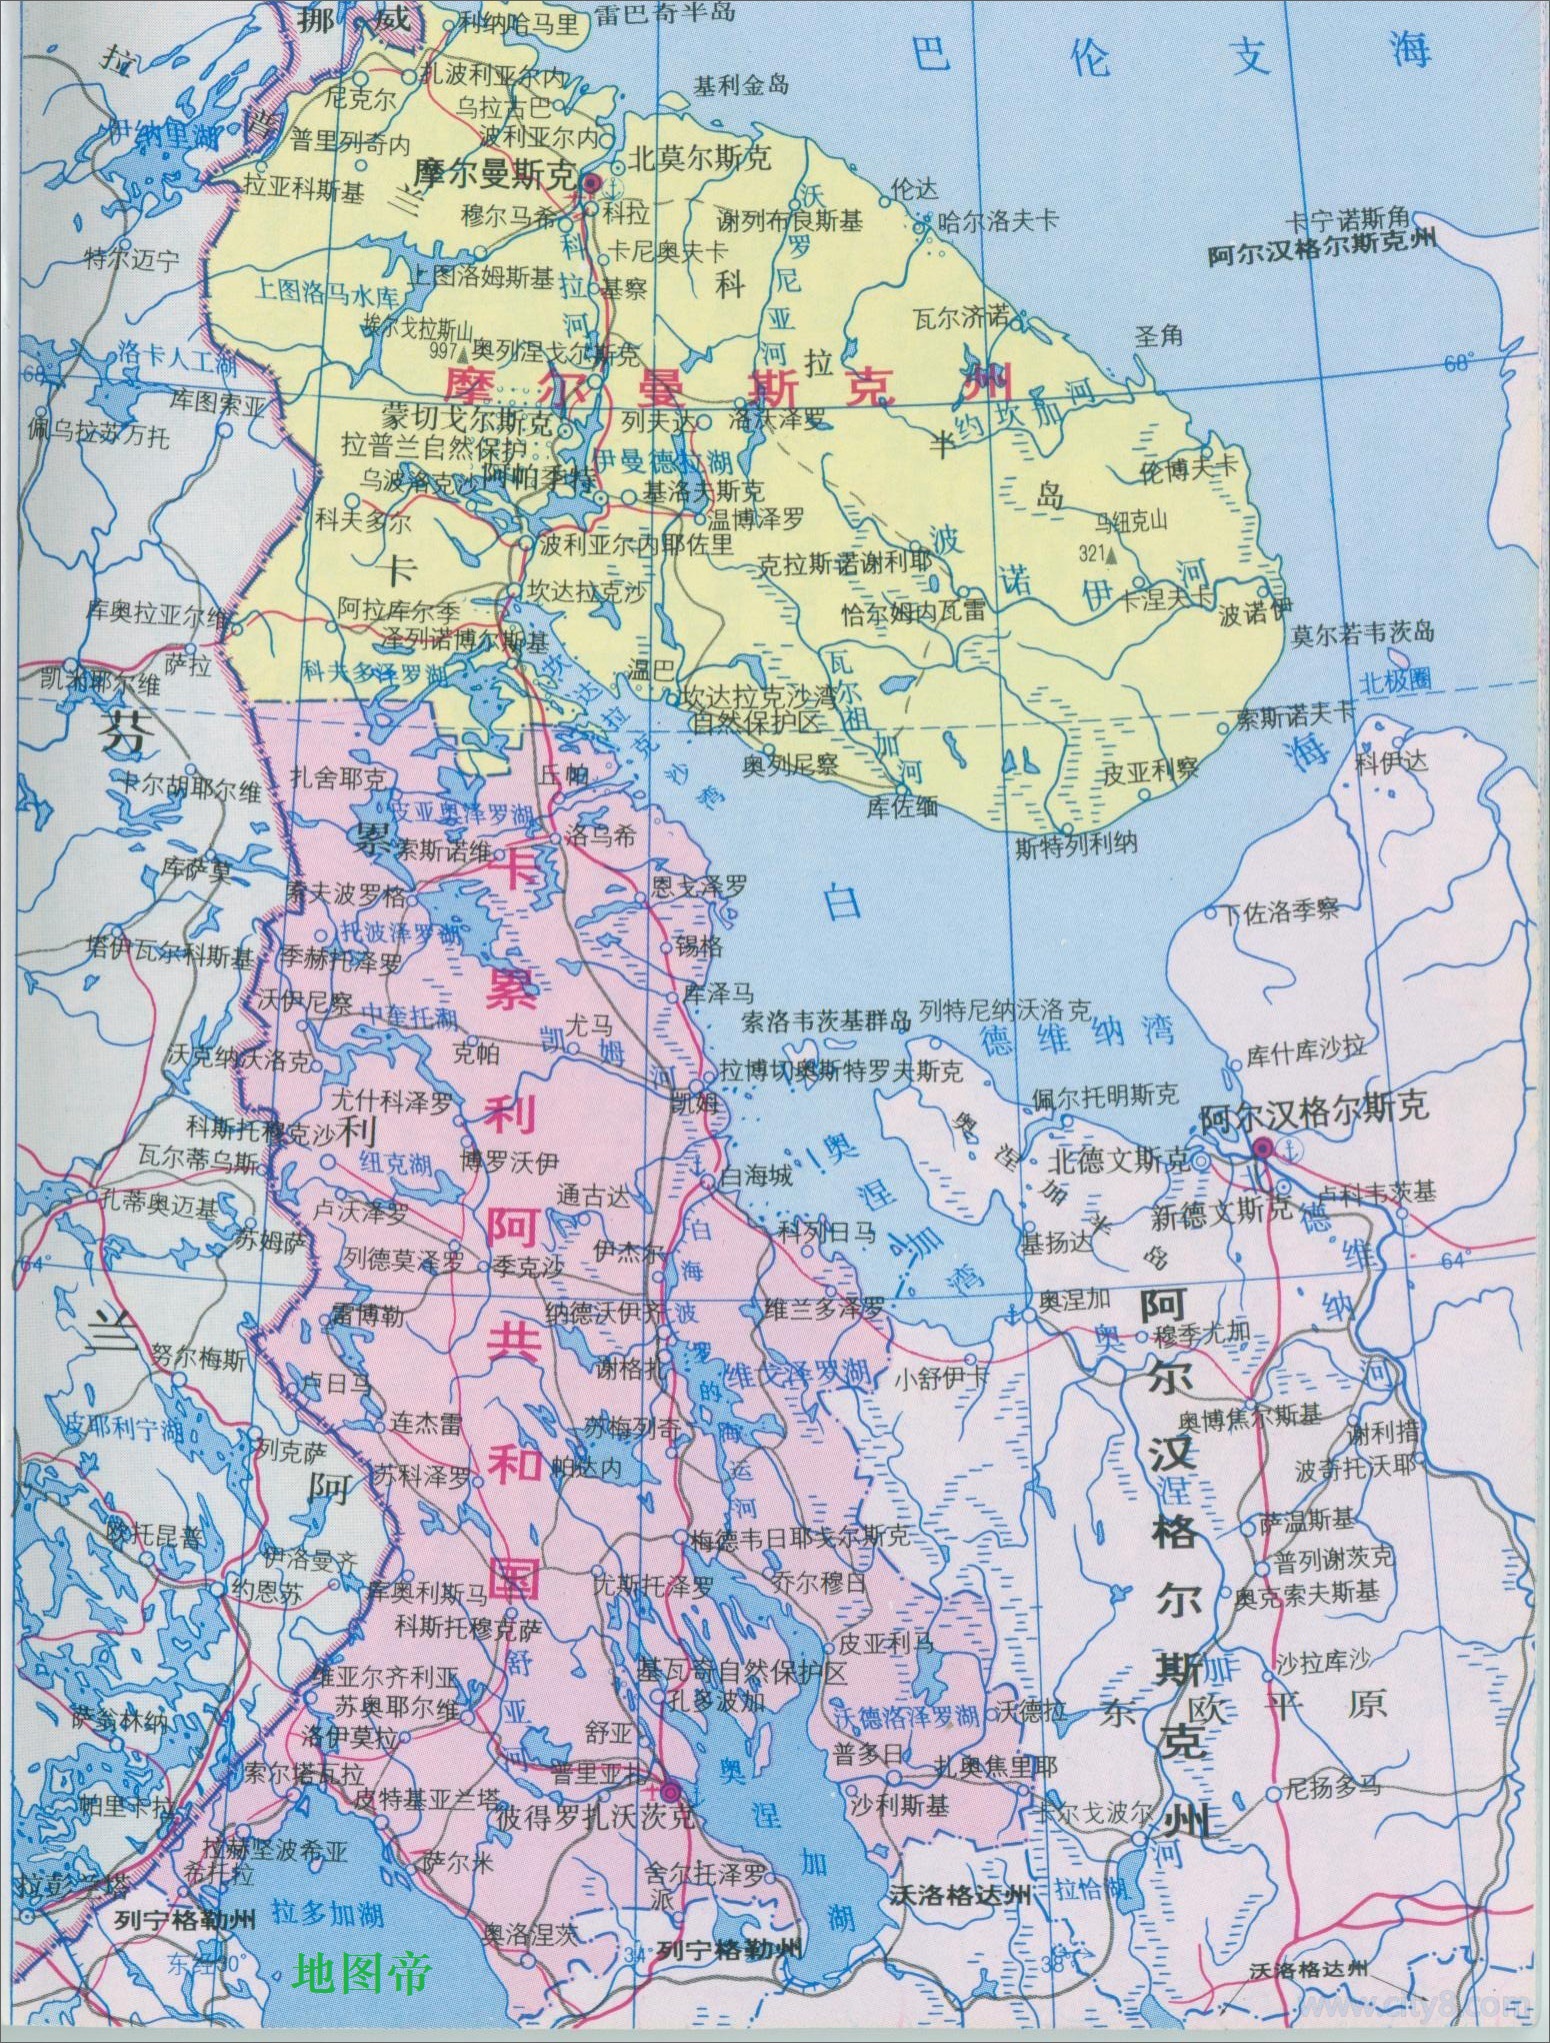 苏联本想让芬兰主动割让地盘,比如把雷巴契半岛等地方割让给苏联,同时